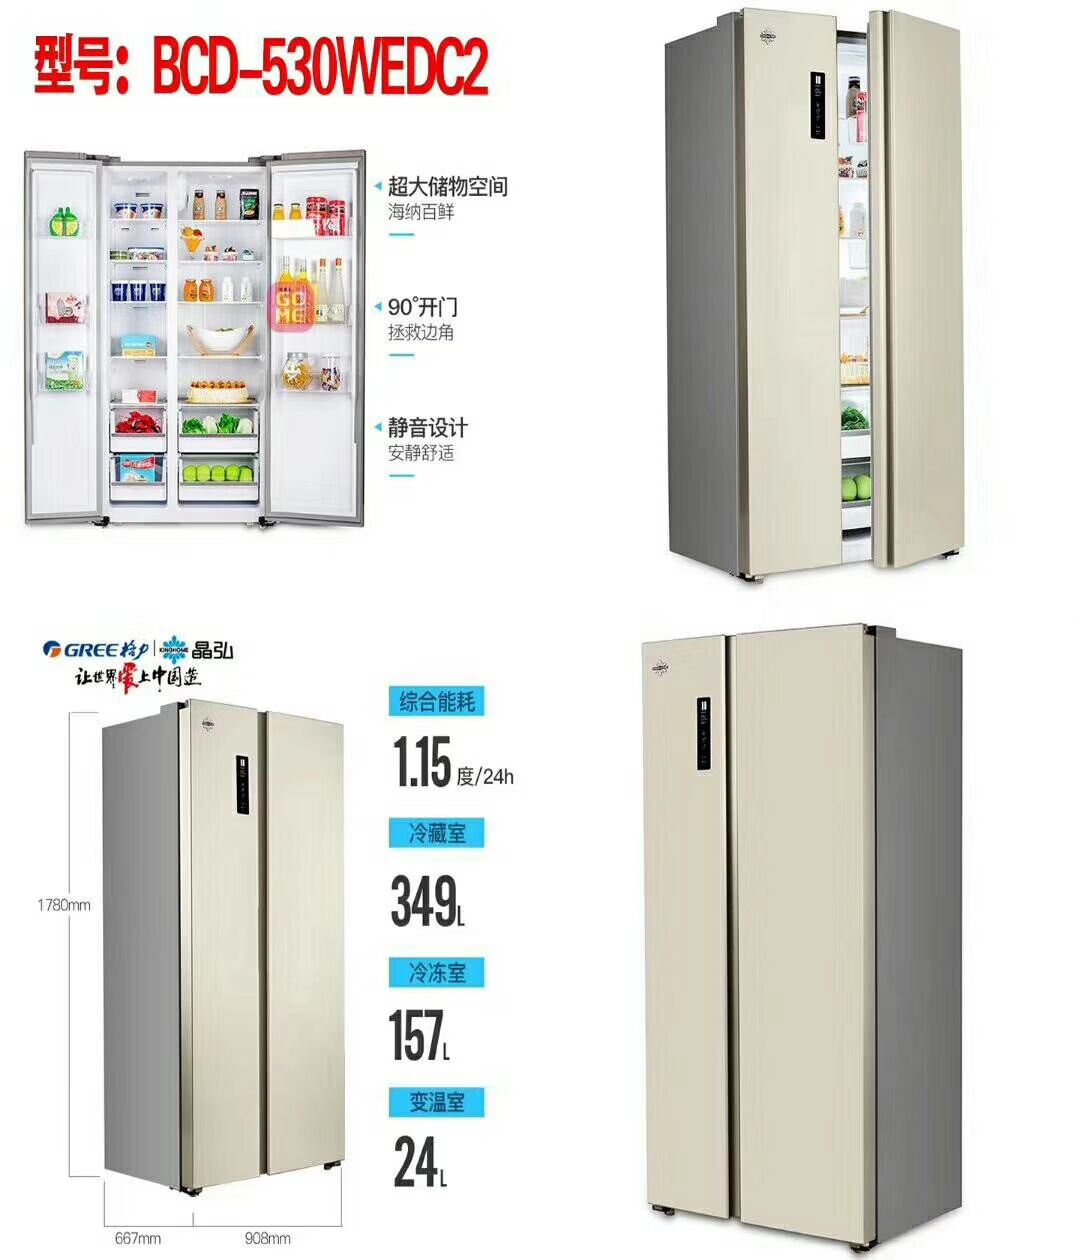 福建格力冰箱回收福建格力冰箱回收 格力冰箱出售 格力冰箱出售价格 马巷格力冰箱回收